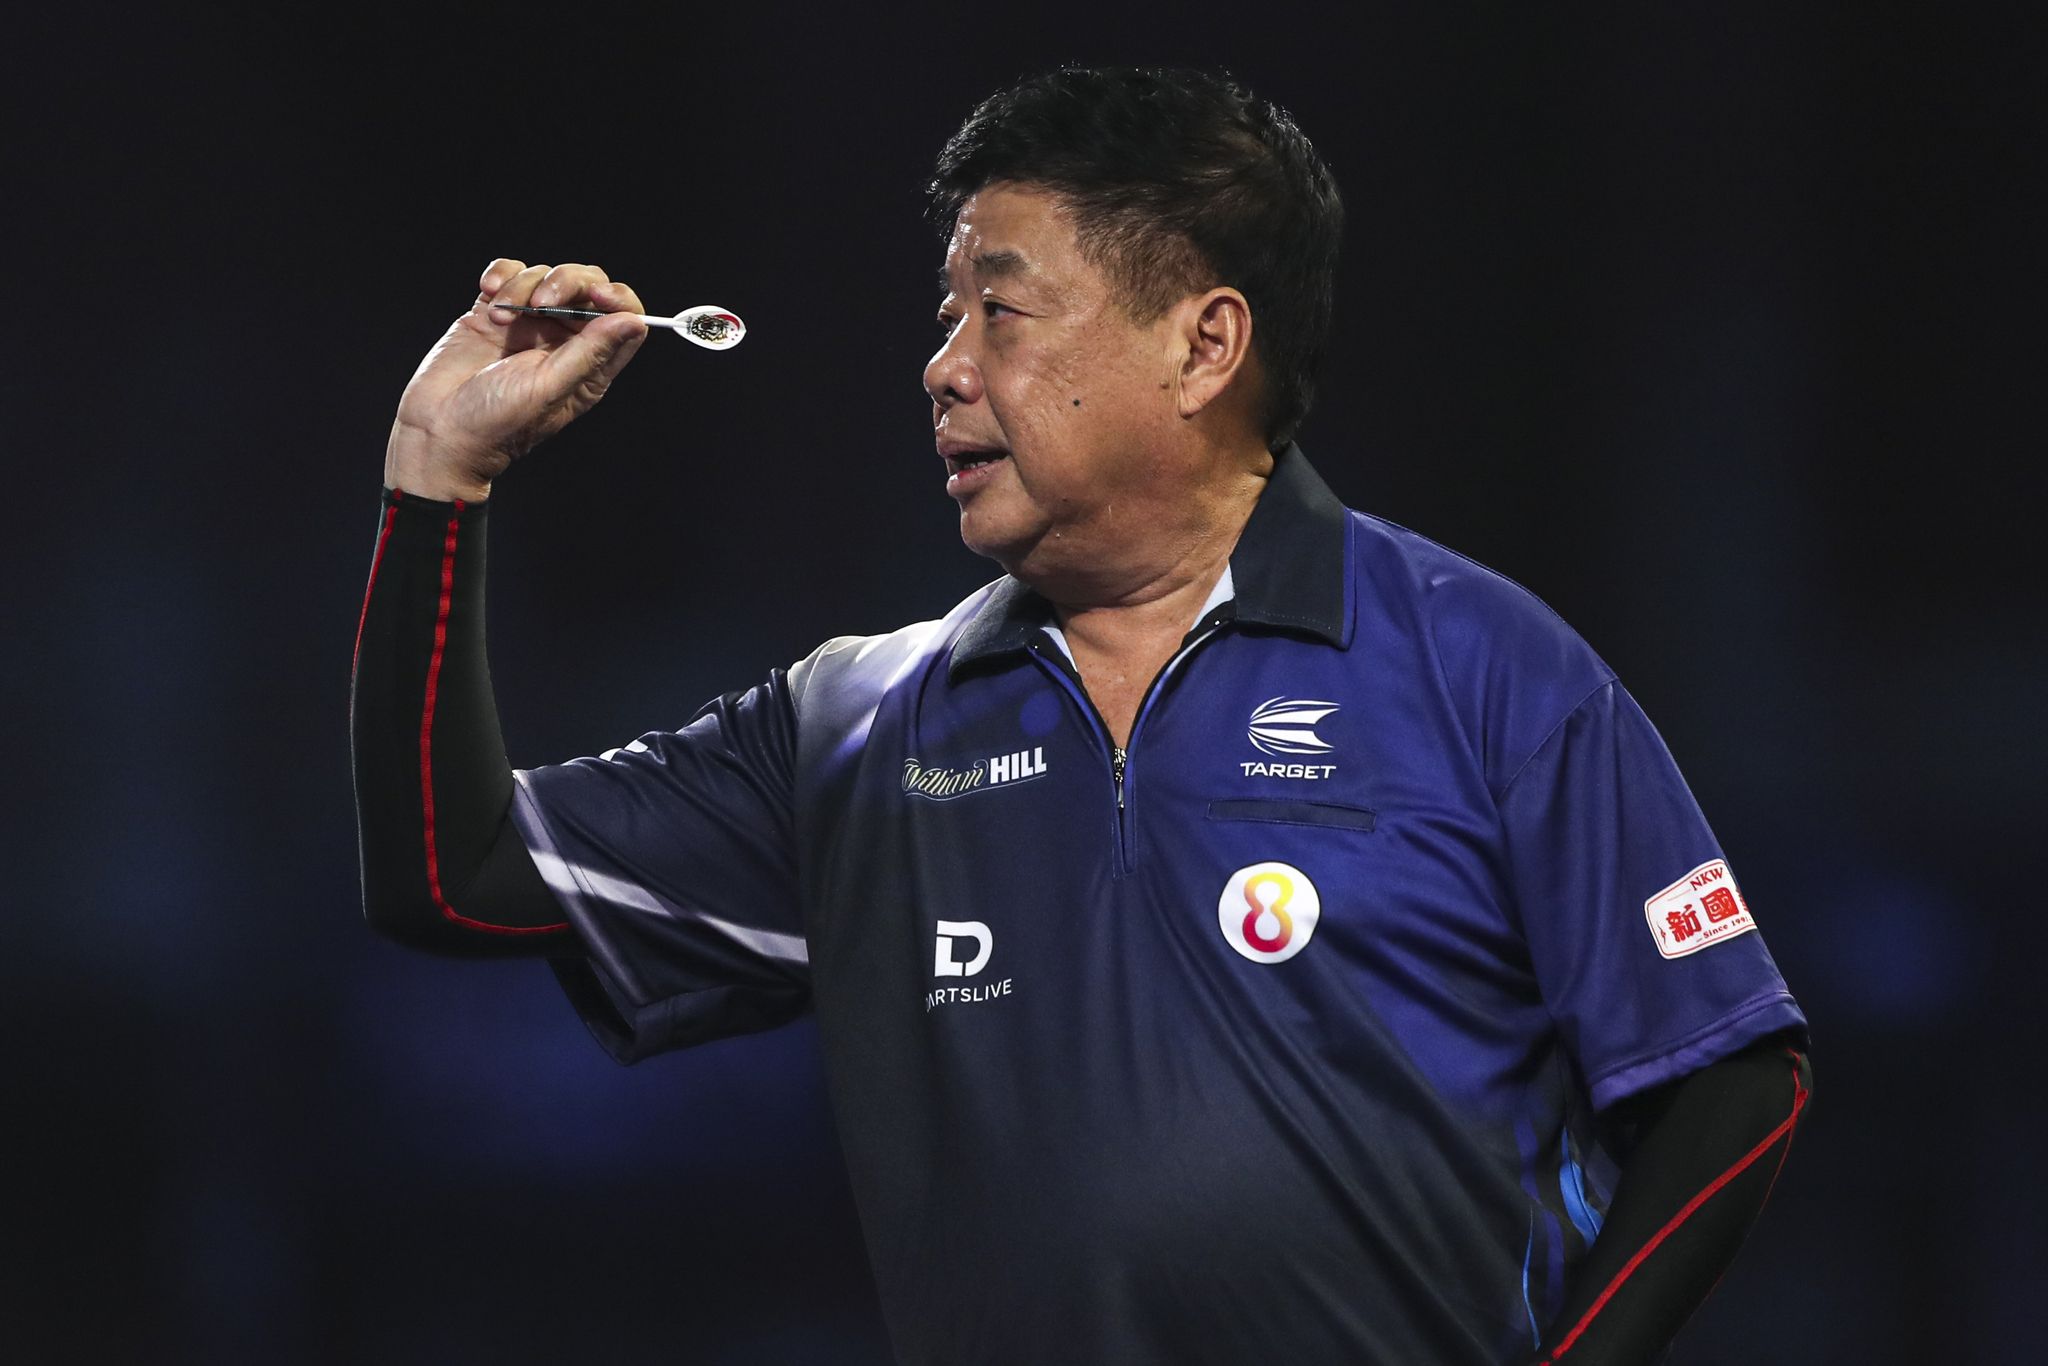 Paul Lim schied bei der Darts-WM aus.